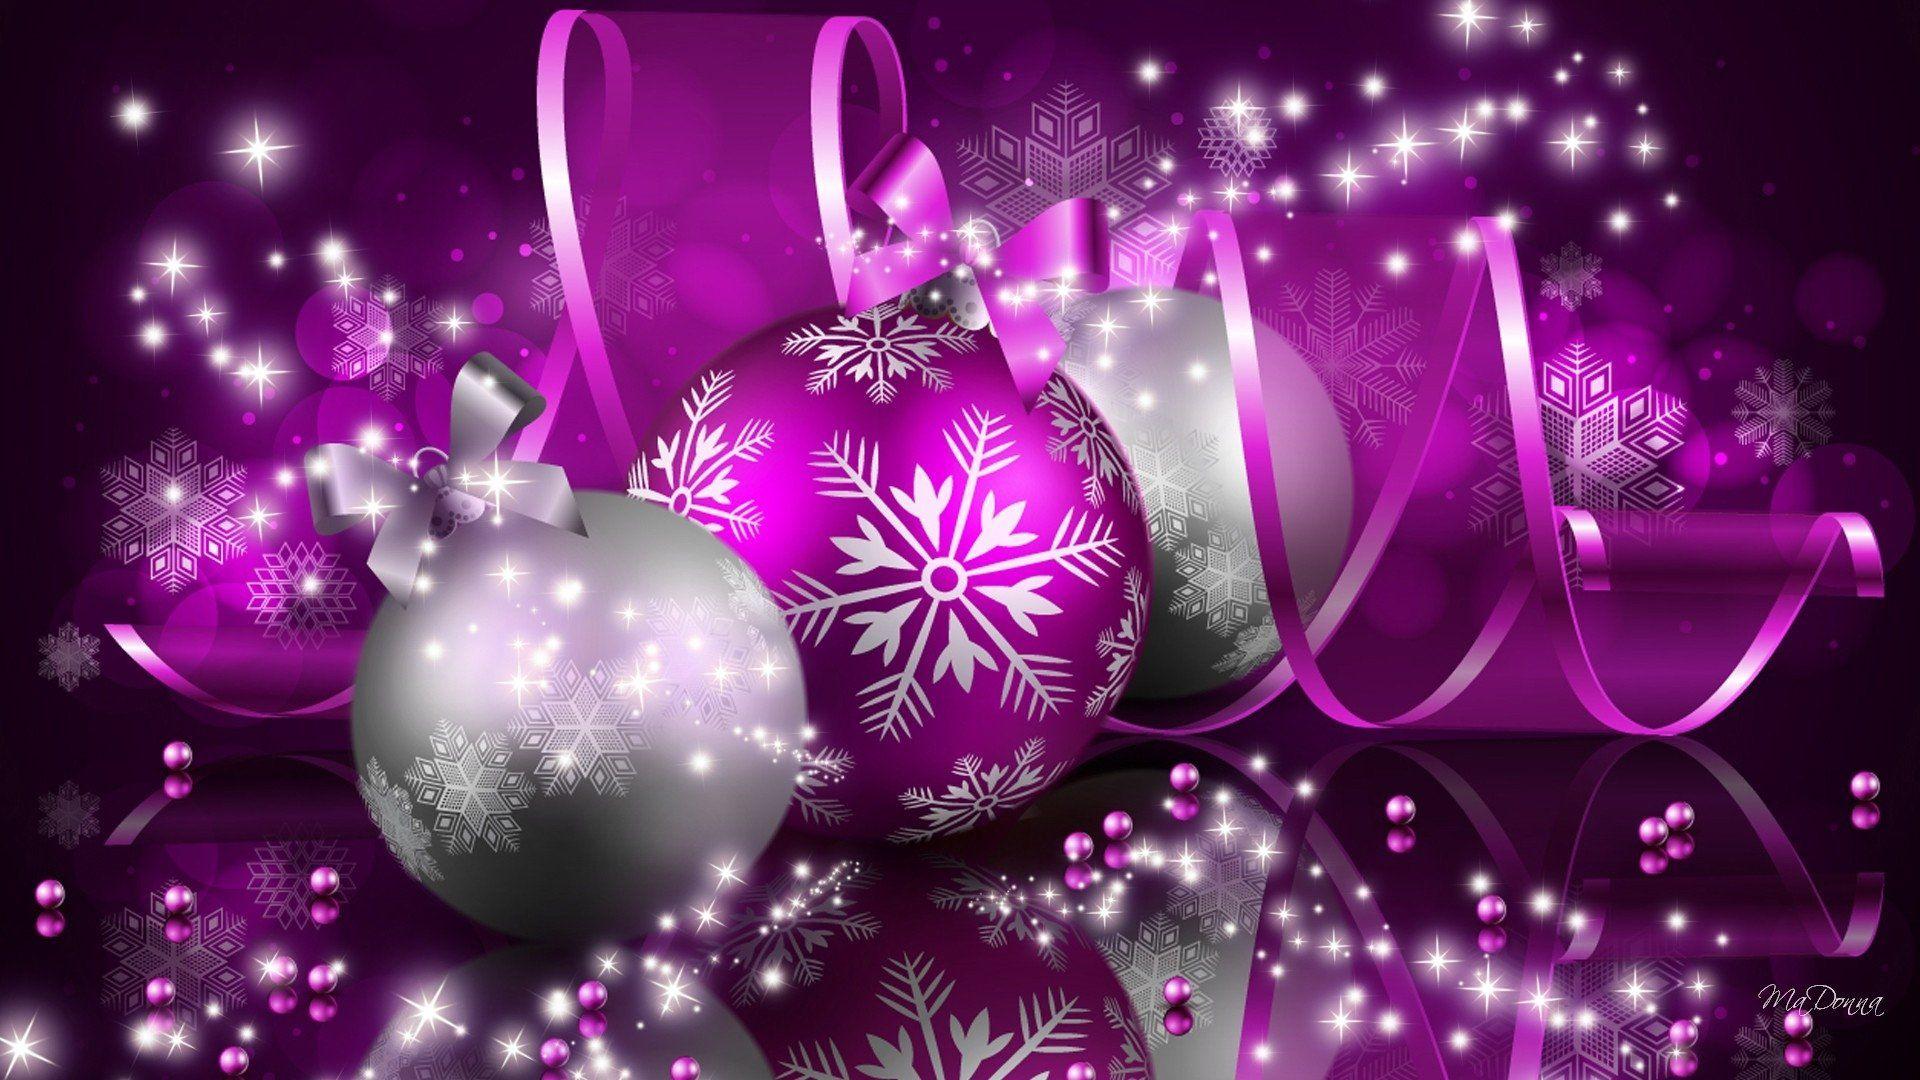 Hình nền Giáng sinh màu tím: Hình nền Giáng sinh màu tím sẽ là một lựa chọn hoàn hảo để trang trí màn hình của bạn. Với sắc tím tinh tế và các họa tiết Giáng sinh đáng yêu, bạn sẽ có một không gian desktop lung linh và đầy nghệ thuật.